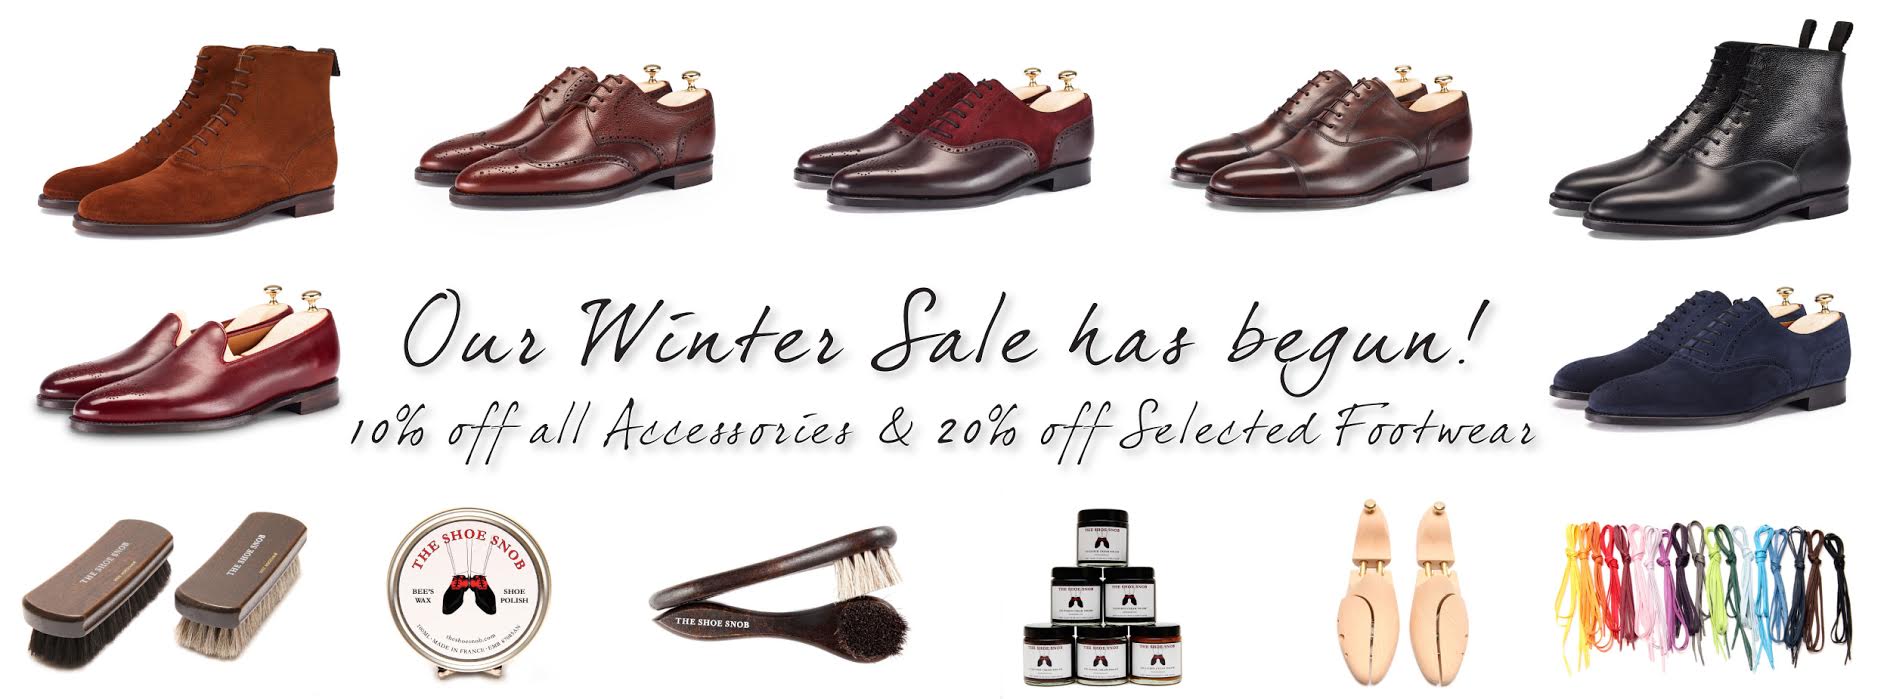 The Shoe Snob / J.FitzPatrick Winter Sale Now Live!